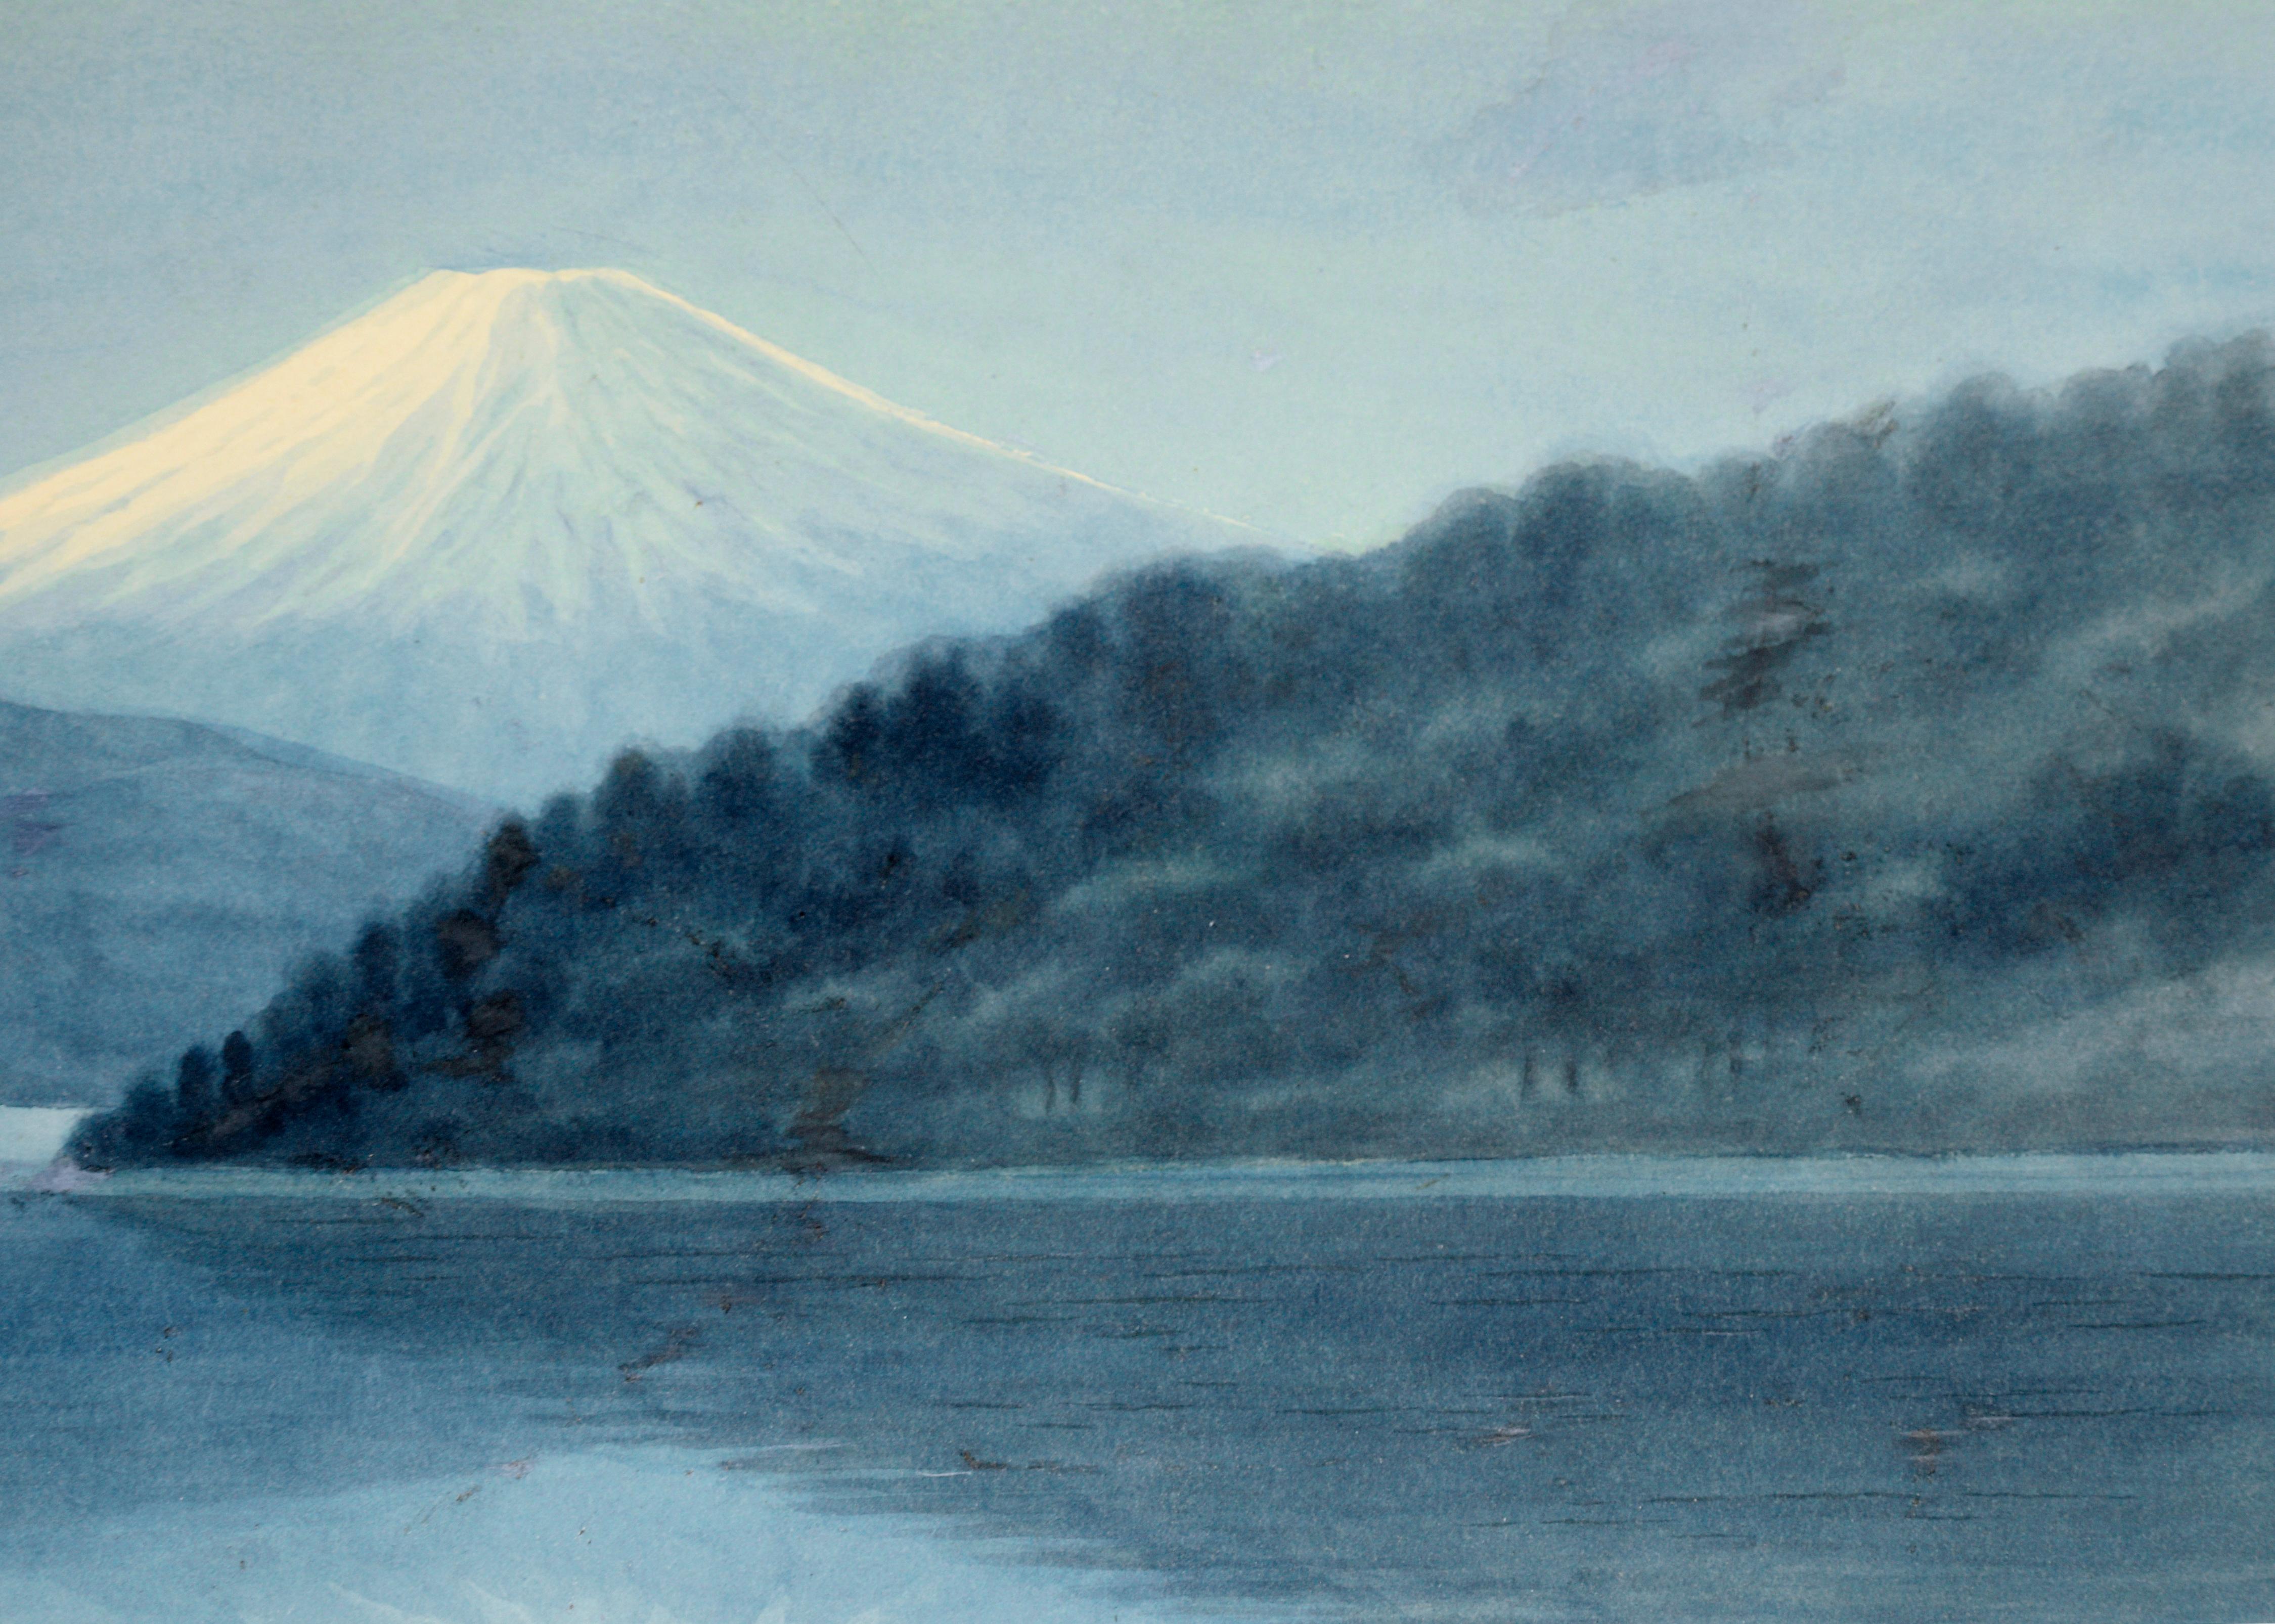 Reflection of Mt. Fuji on Lake, nach Niimi Sei – Aquarell auf Papier

Ein ruhiges Aquarell in gedämpften Blau- und Grüntönen, das Japans Wahrzeichen, den Berg Fuji, darstellt. Der Berg erhebt sich hinter einem gläsernen See mit zwei Segelbooten aus